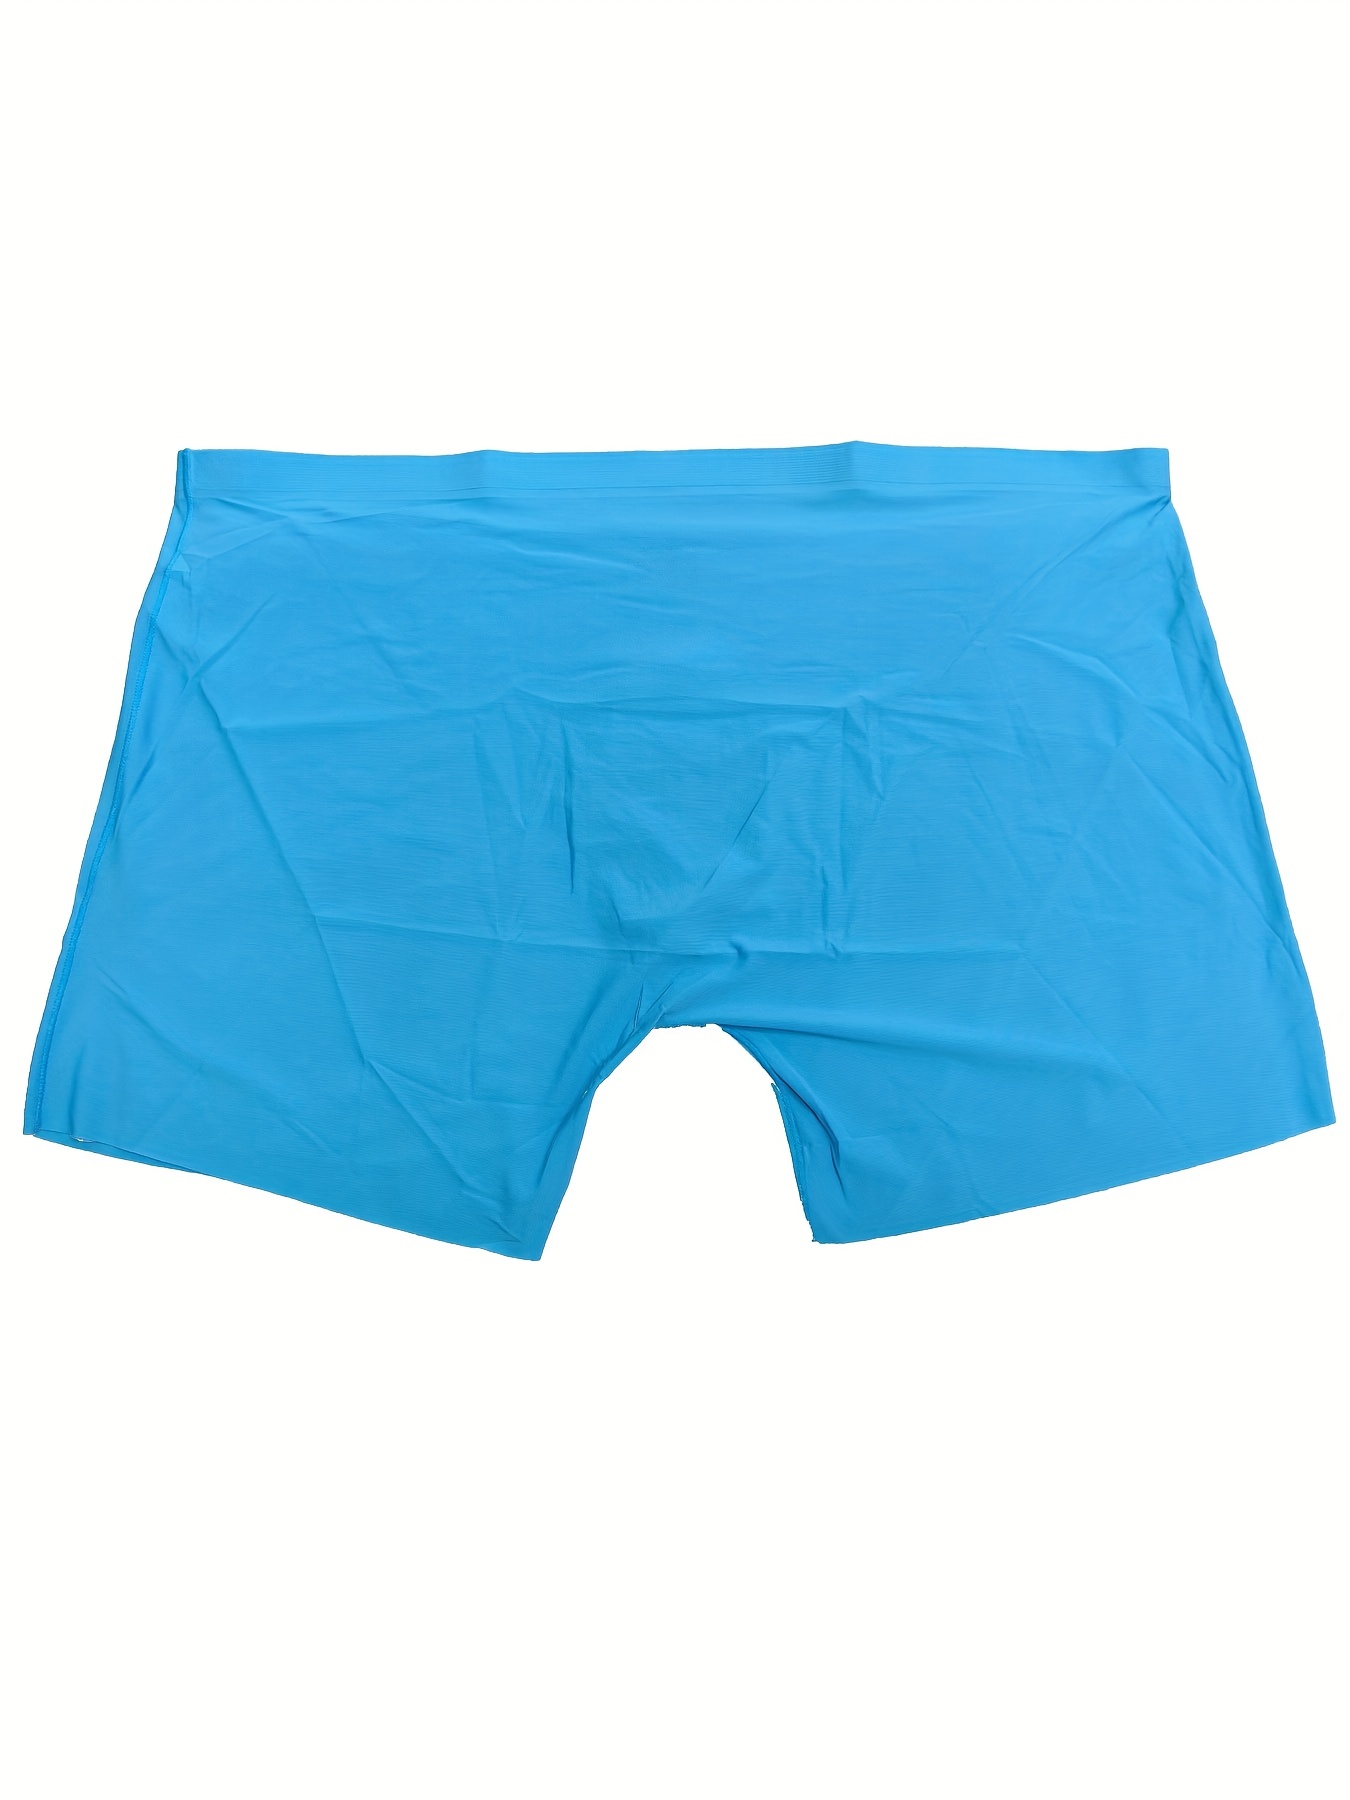 Stars at Night Blue Boxer Brief Underwear Blue